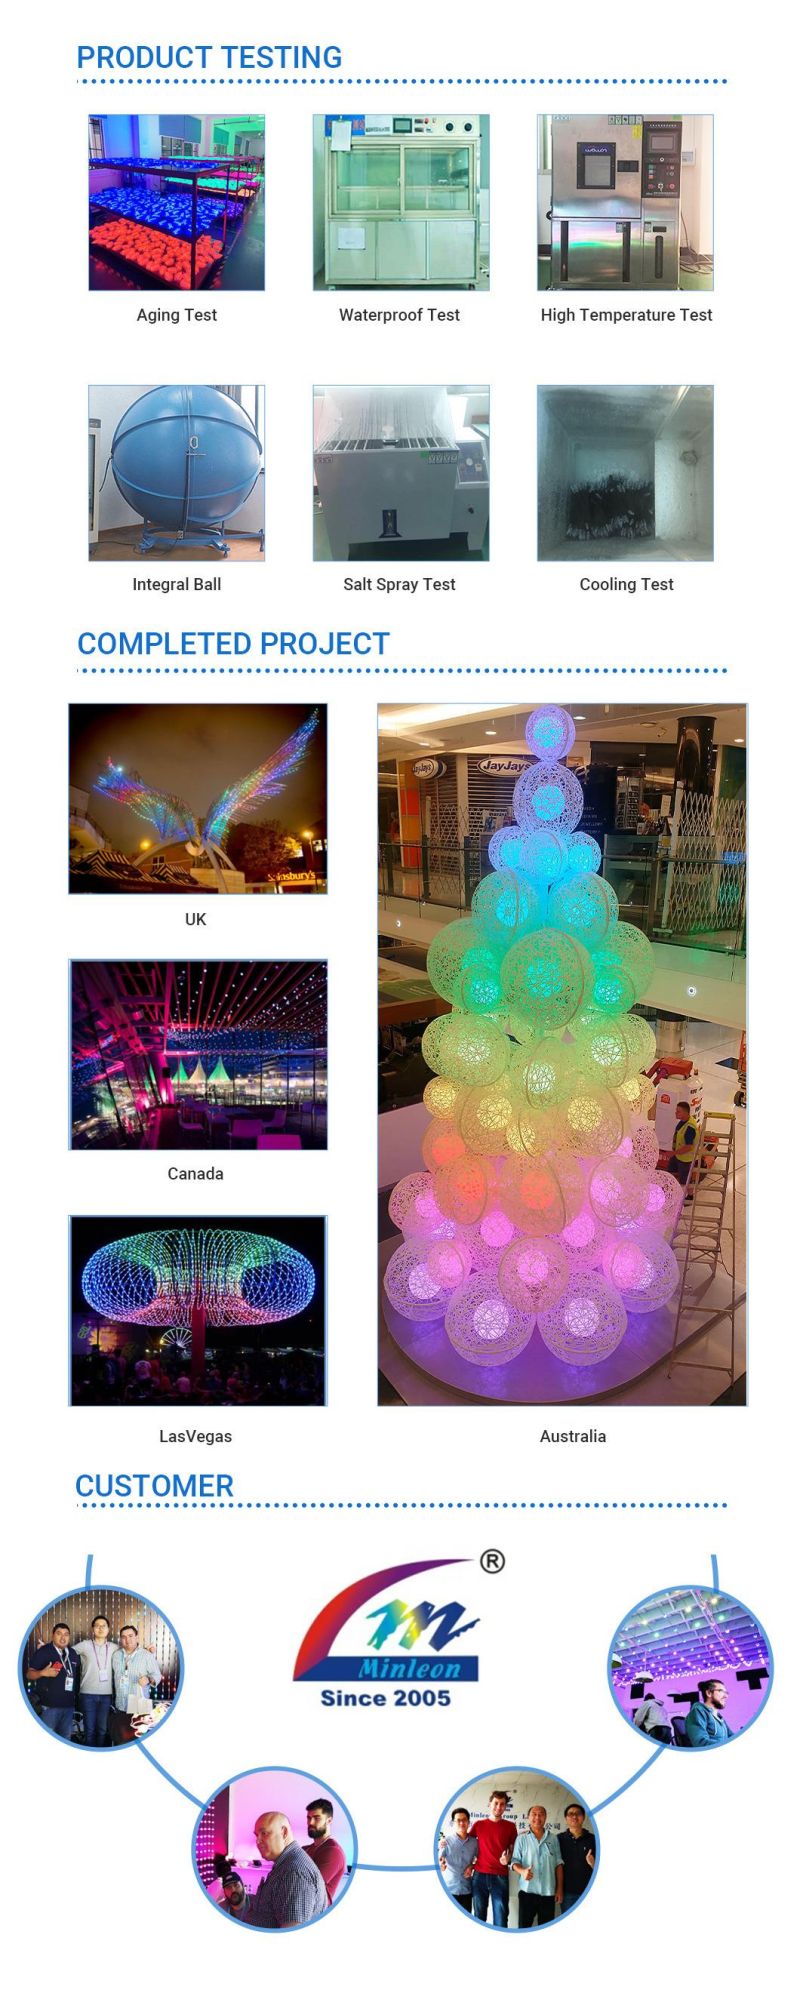 Plug Power RGB Christmas Tree with 304 Lights